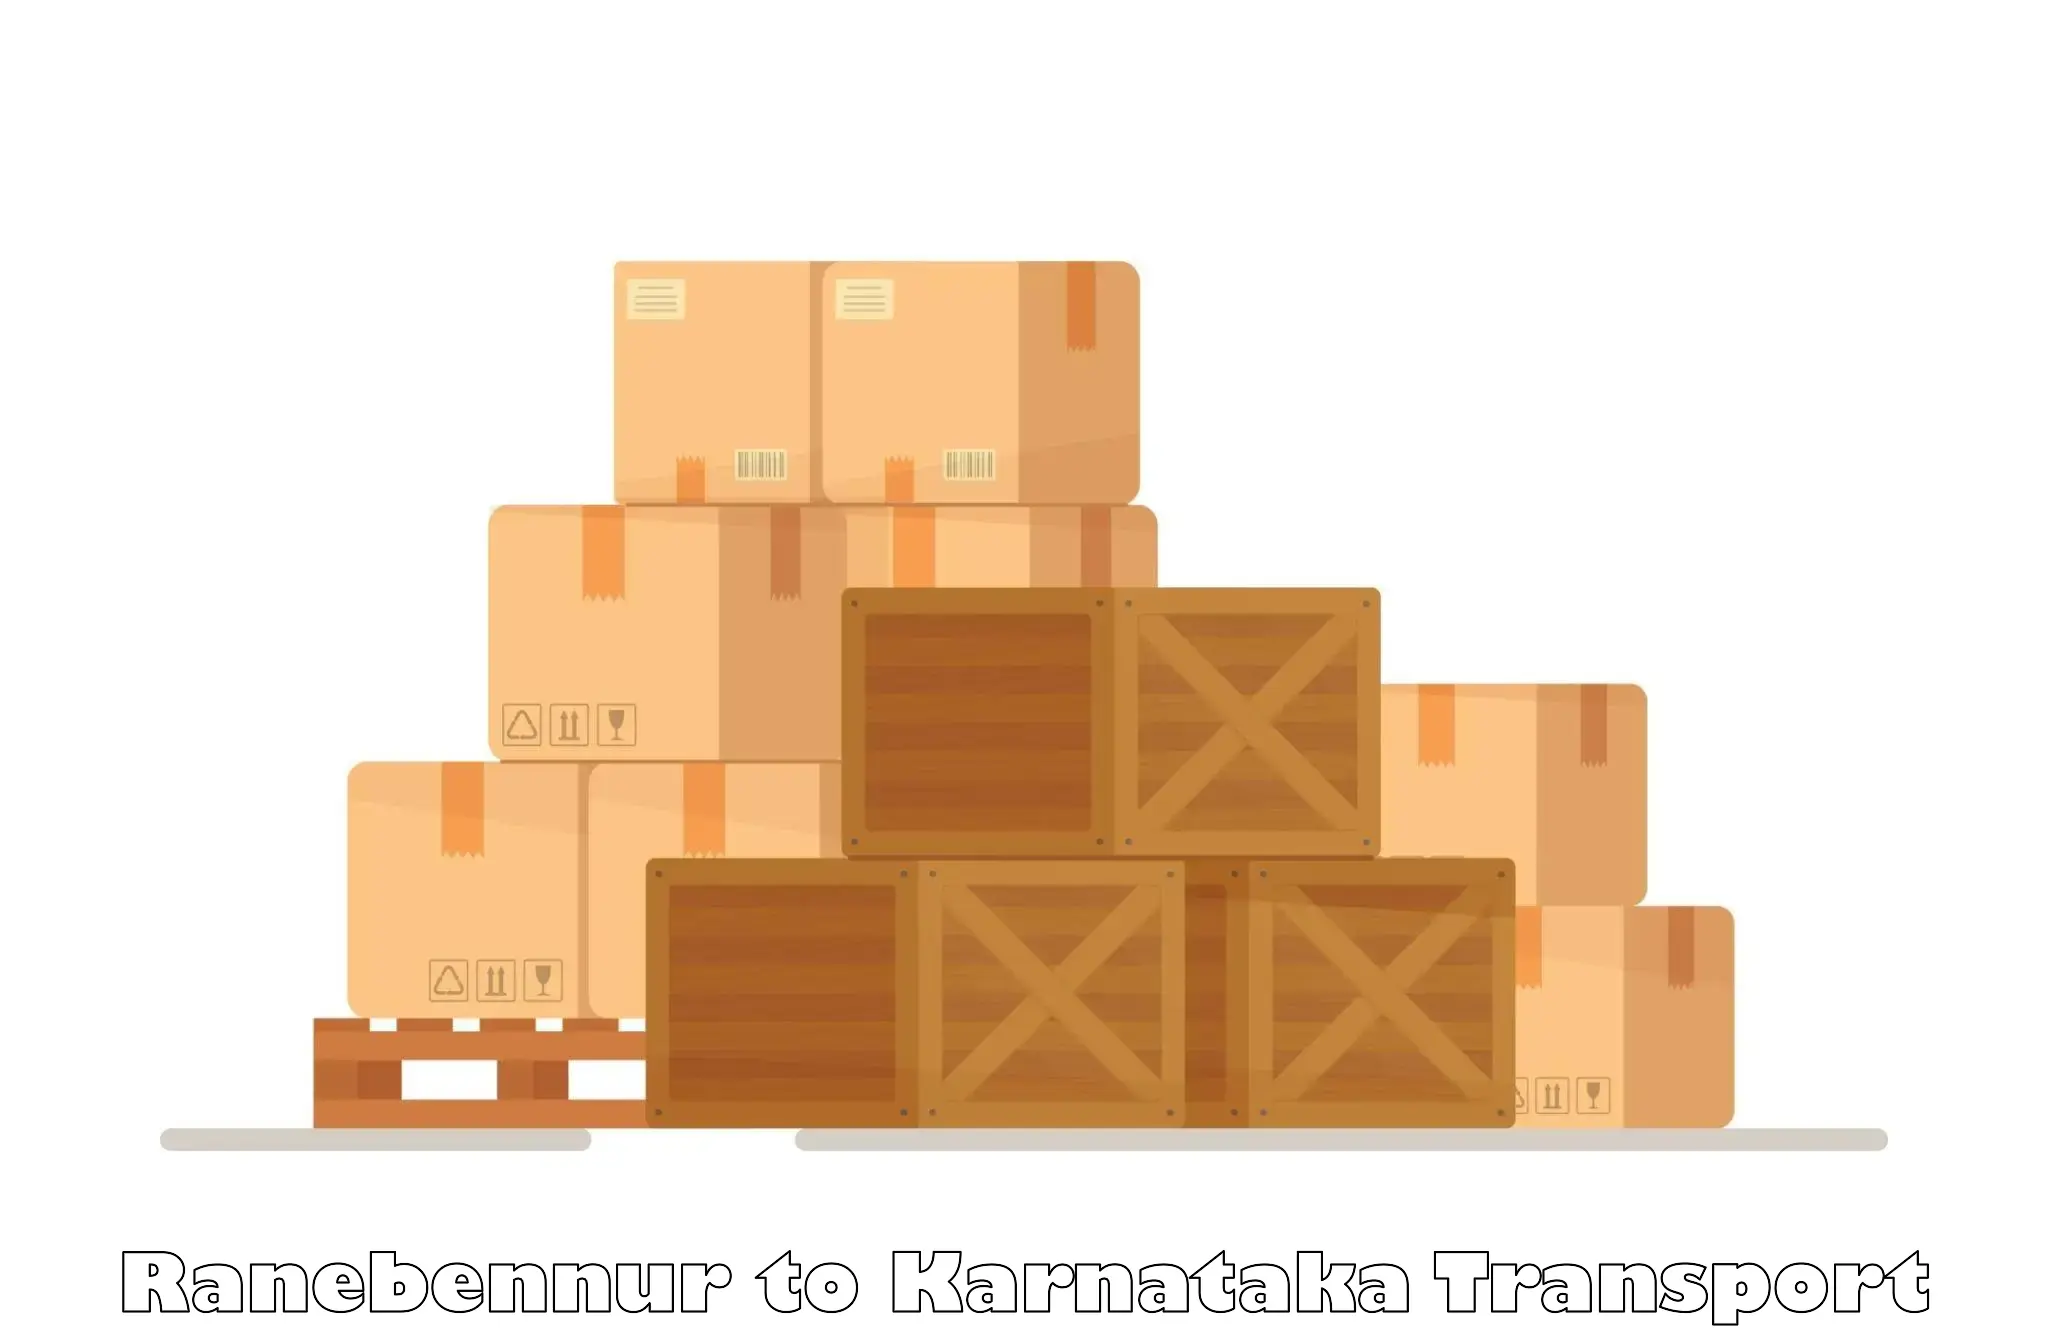 Container transport service Ranebennur to Puttur